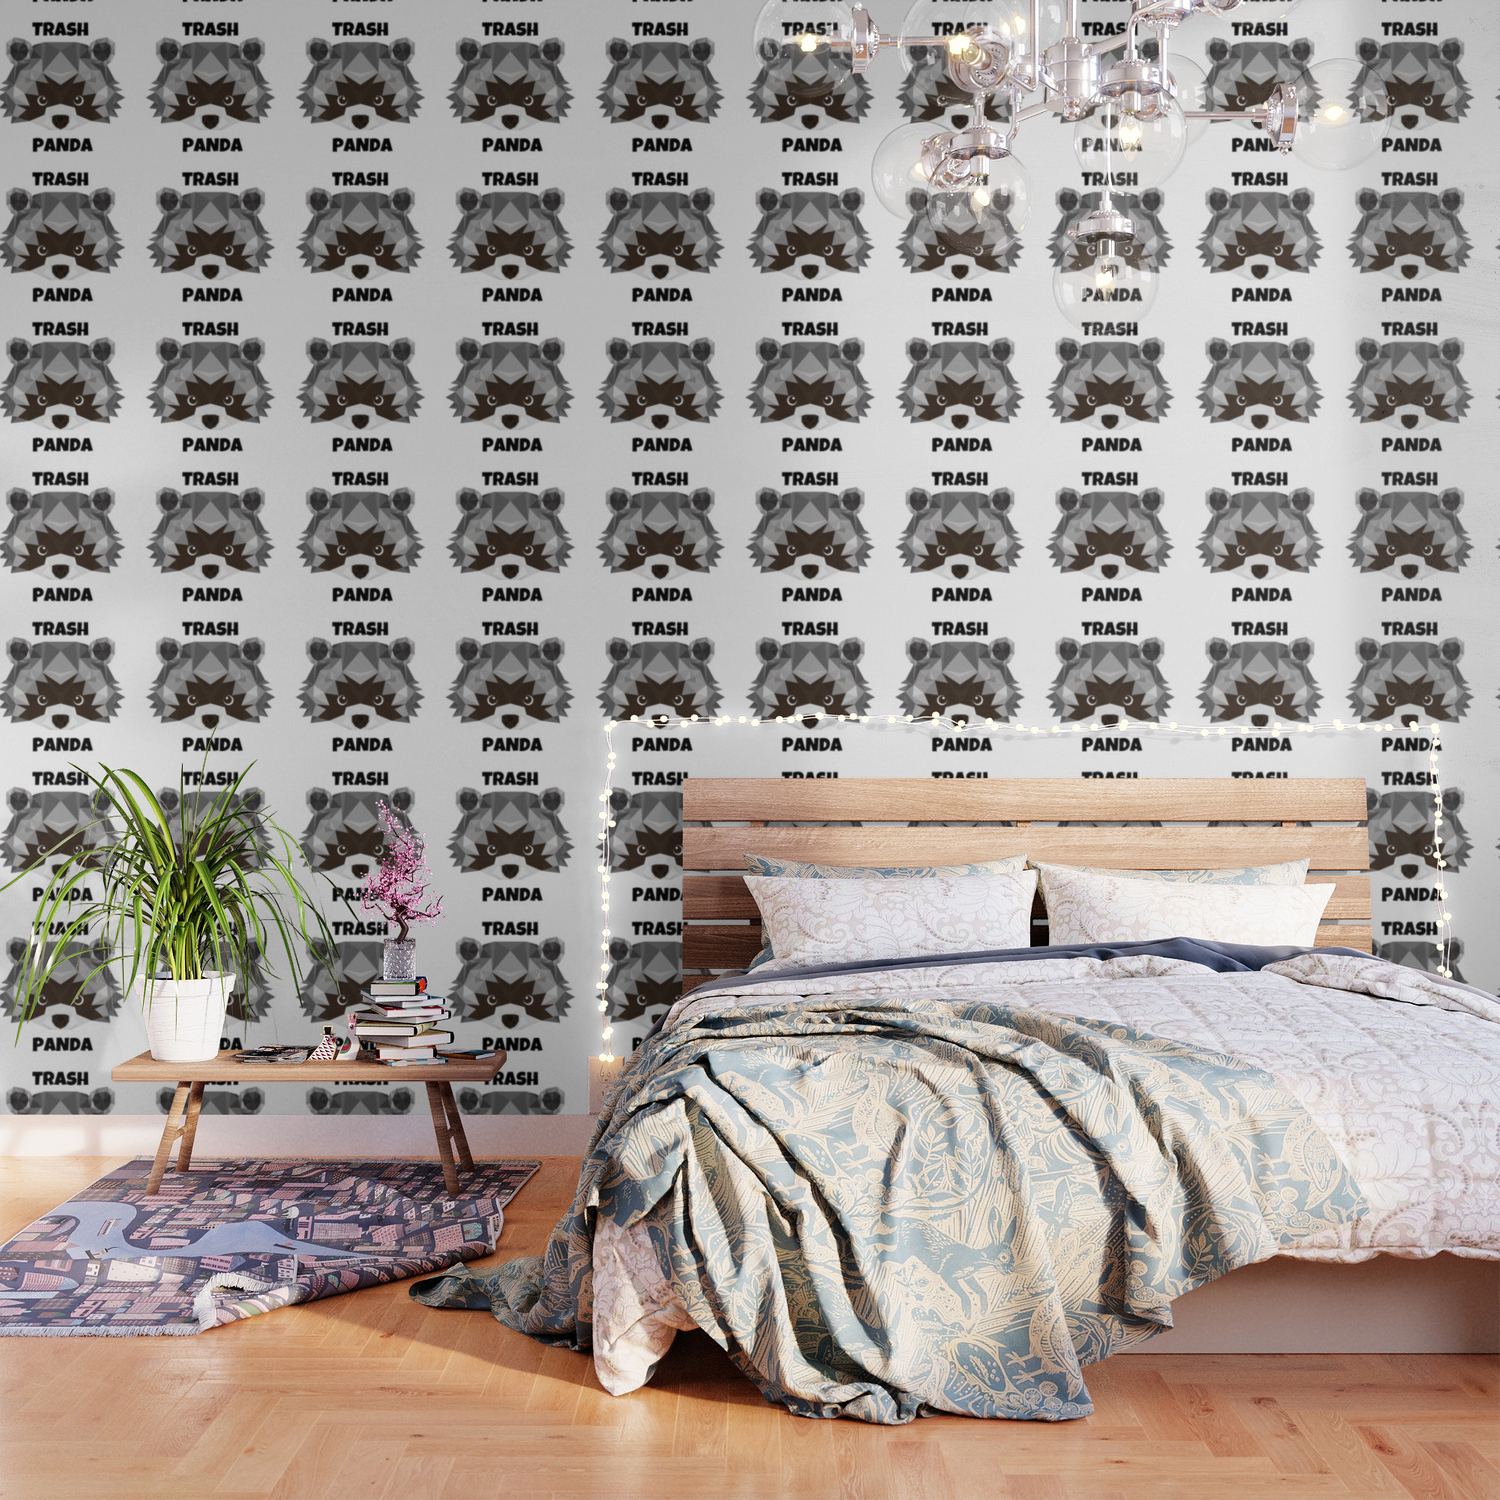 Trash Panda Wallpaper